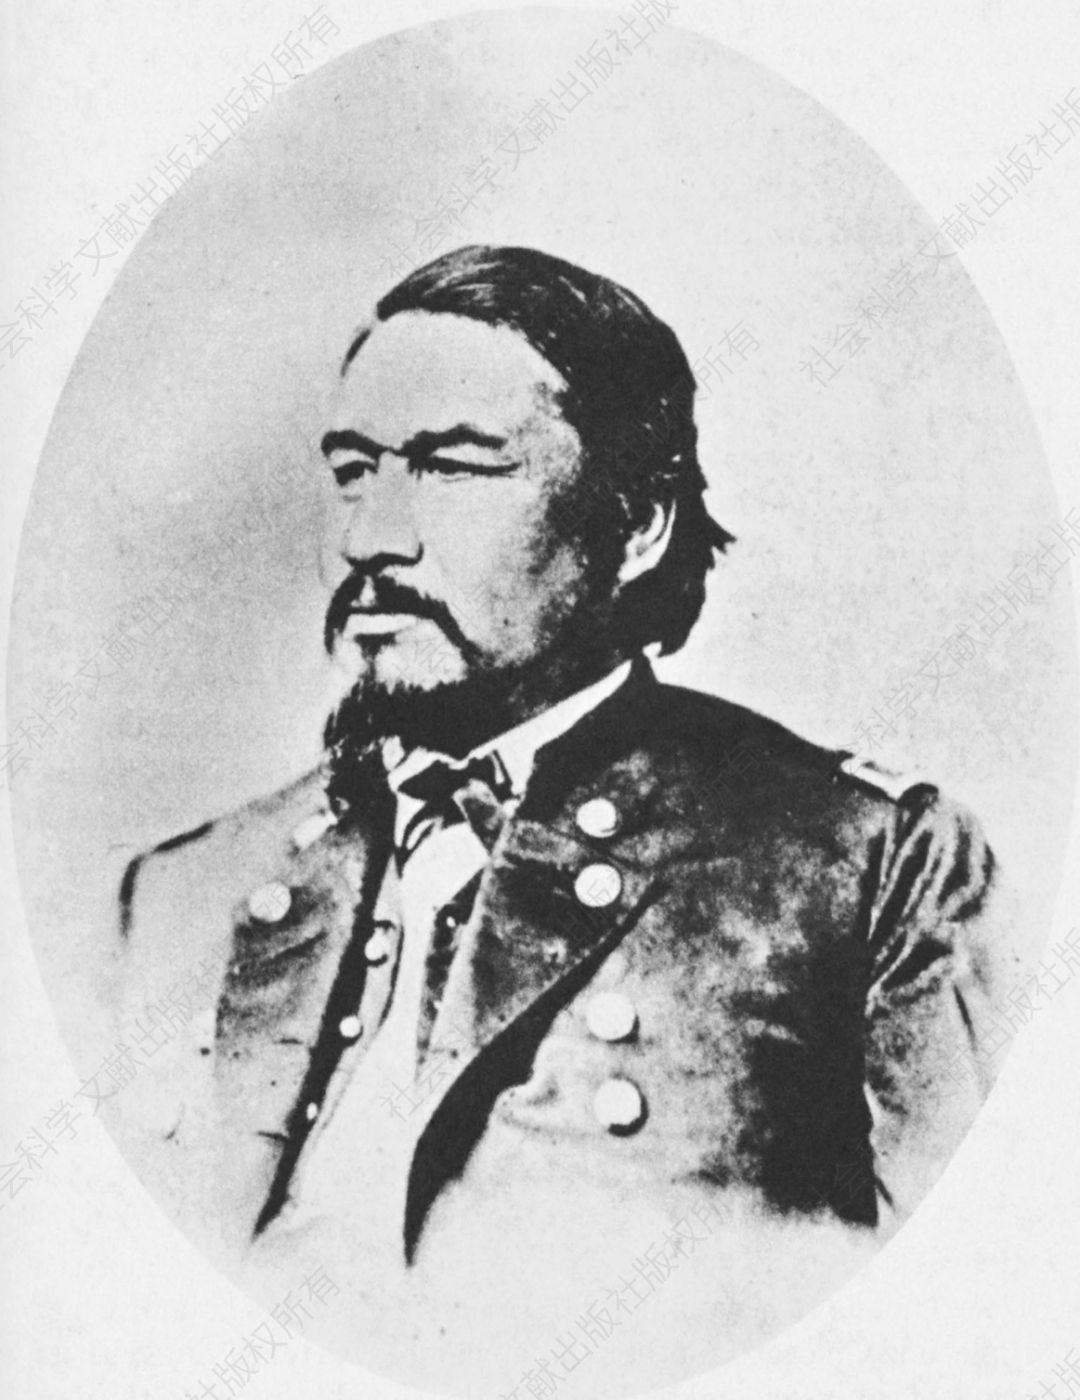 14.埃利·帕克，又名多诺霍加瓦，塞内卡酋长，尤利西斯·格兰特军事秘书兼印第安事务专员。拍摄于1867年左右。由史密森学会提供。